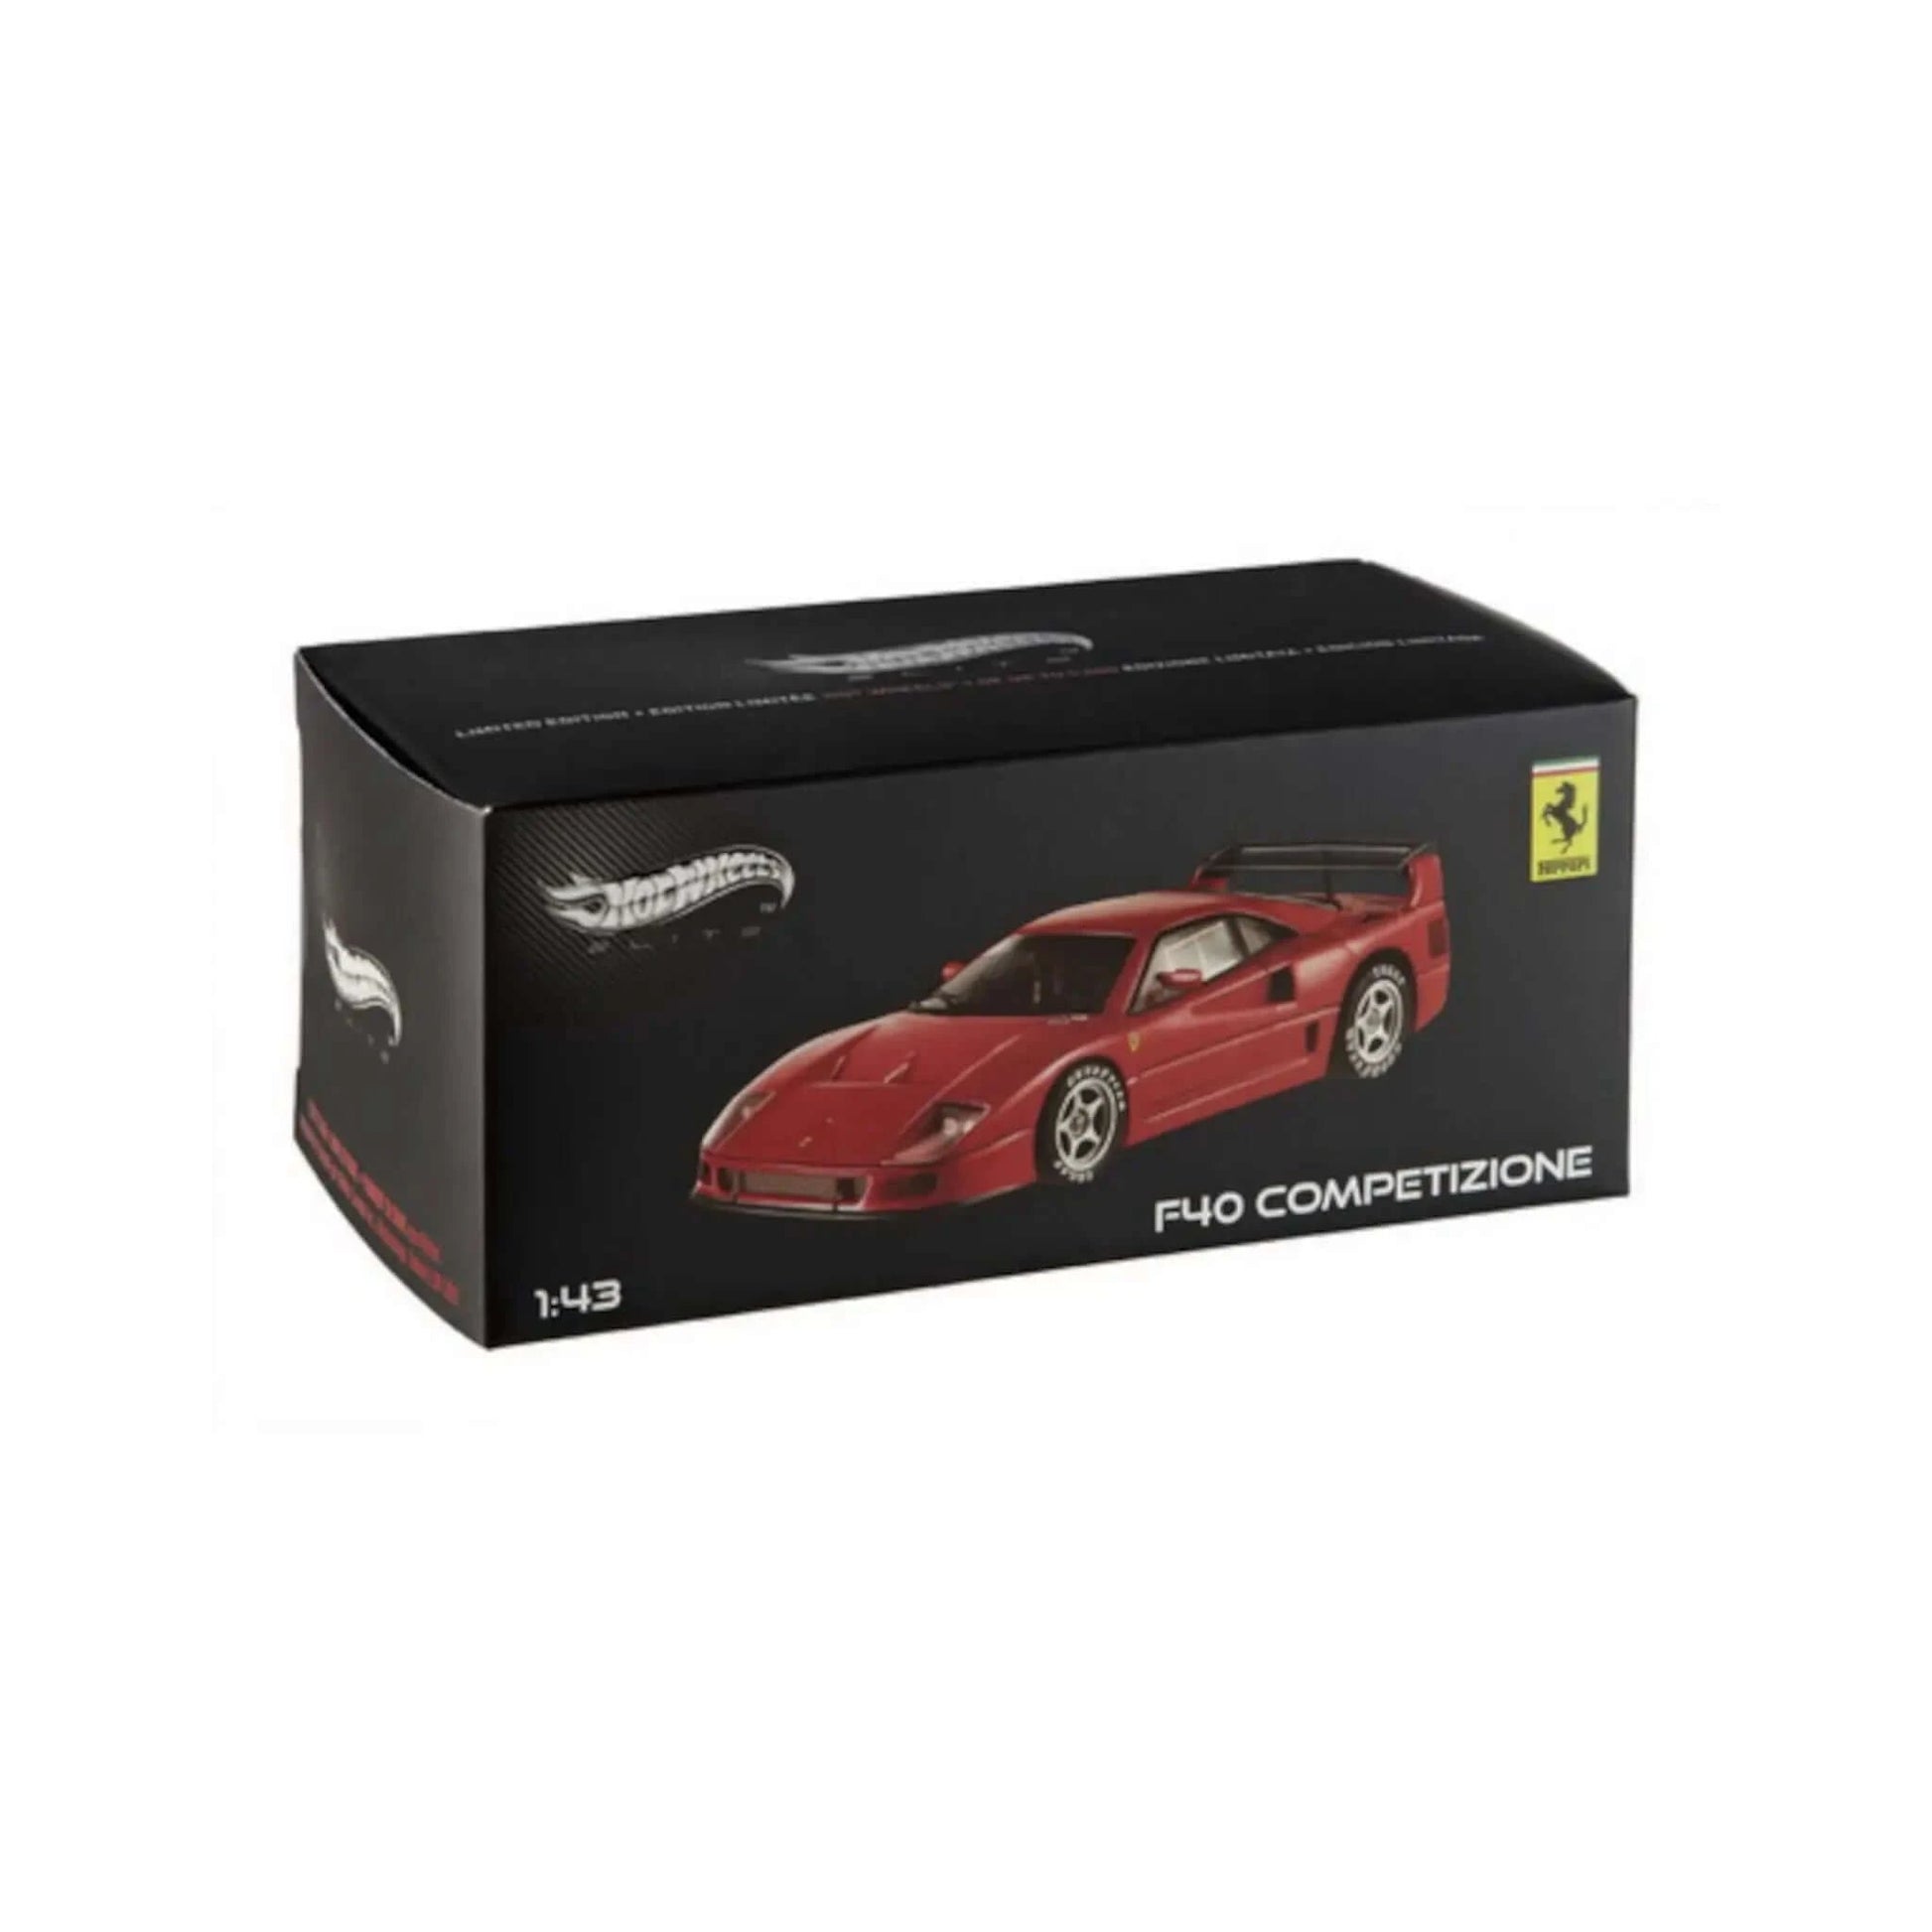 Ferrari F40 Competizione Hotwheels 1/43 - MX5507